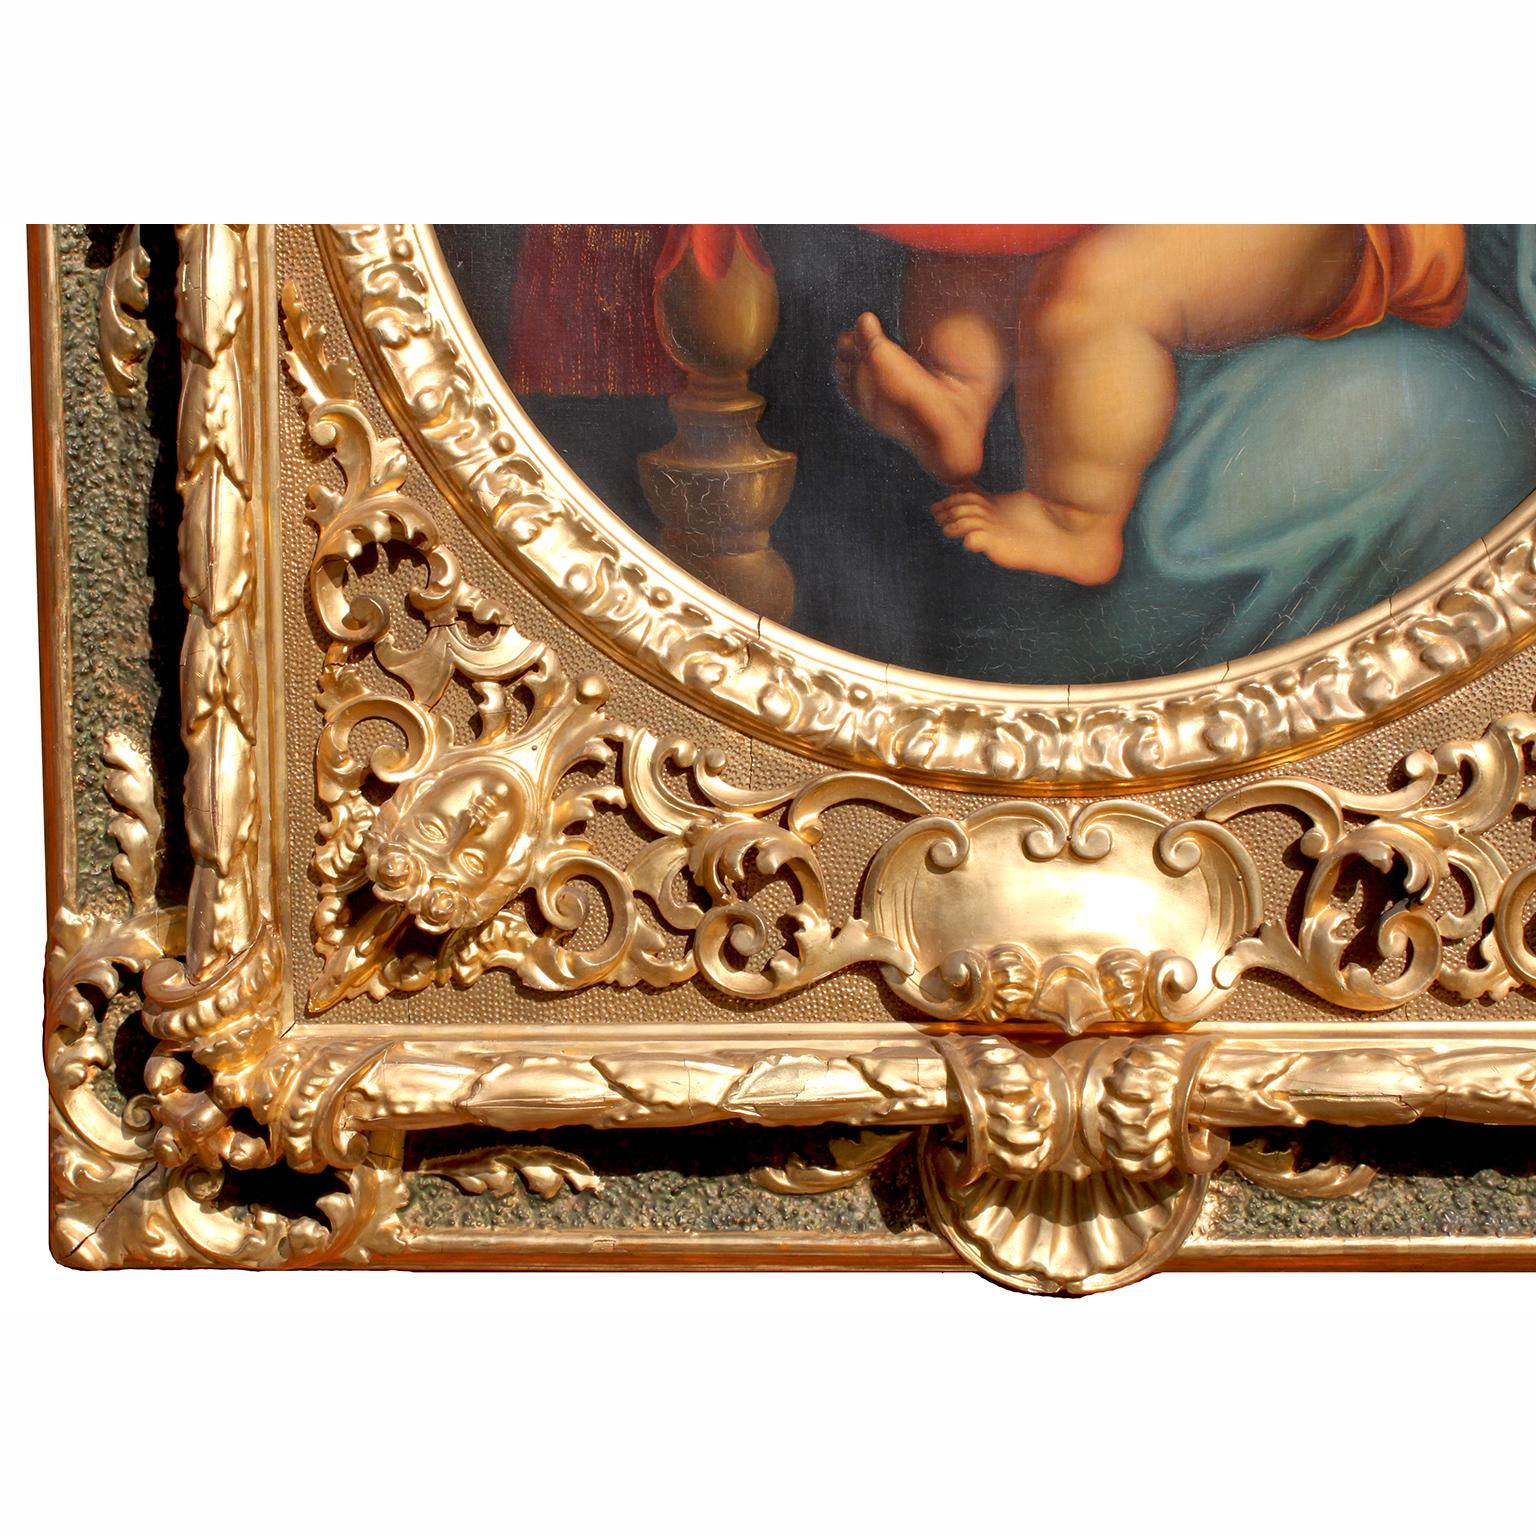 Italian After Raffaello Sanzio 1483-1520 Raphael La Madonna della Seggiola Oil on Canvas For Sale